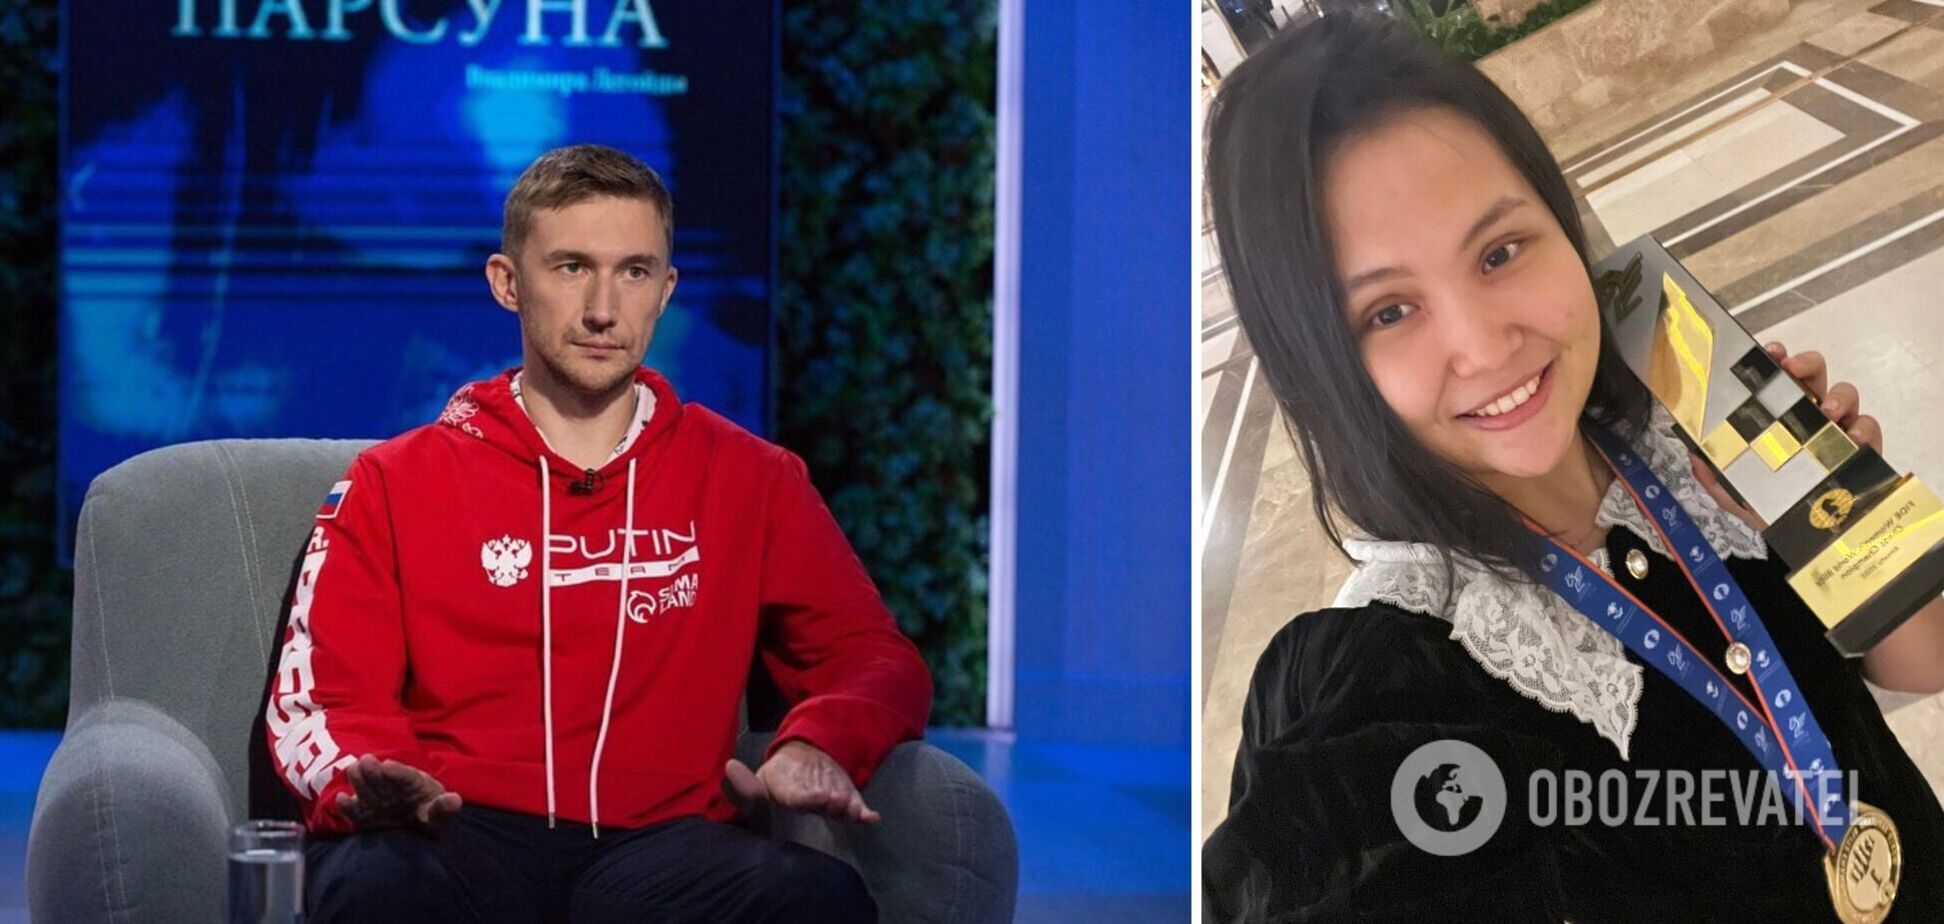 Чемпион мира, предавший Украину, сенсационно проиграл в Москве 18-летней девушке на международном турнире по шахматам